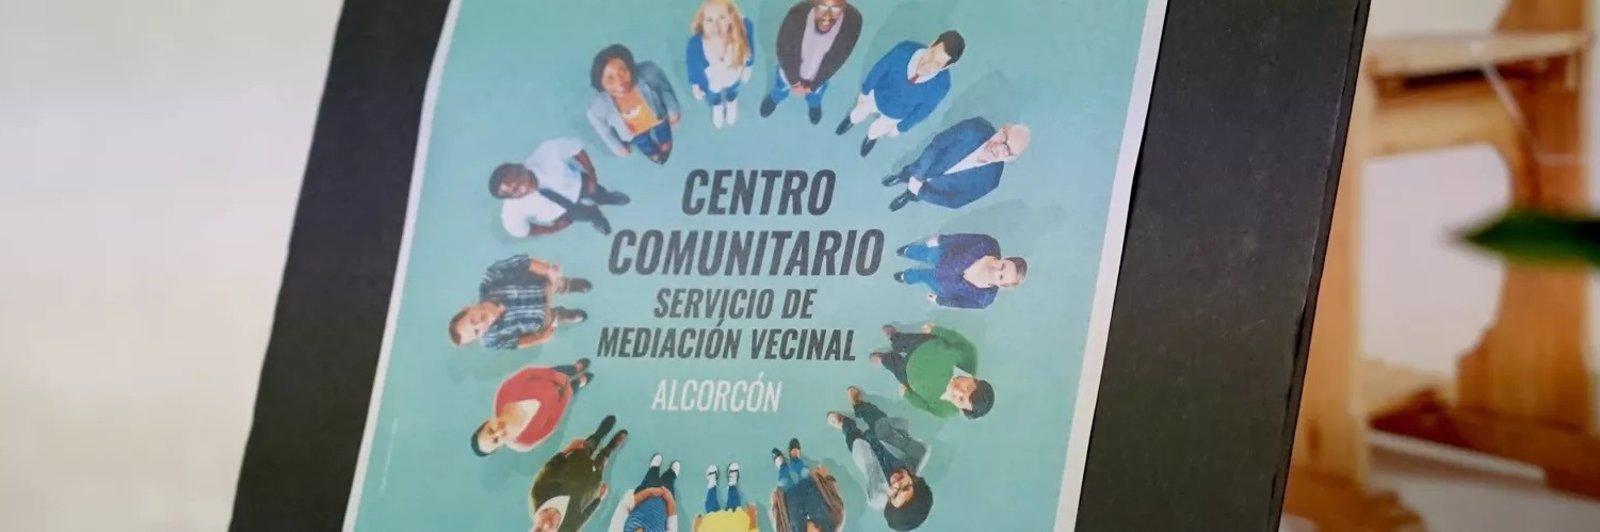 El Servicio de Mediación Vecinal e Intervención Comunitaria de Alcorcón cumple un año